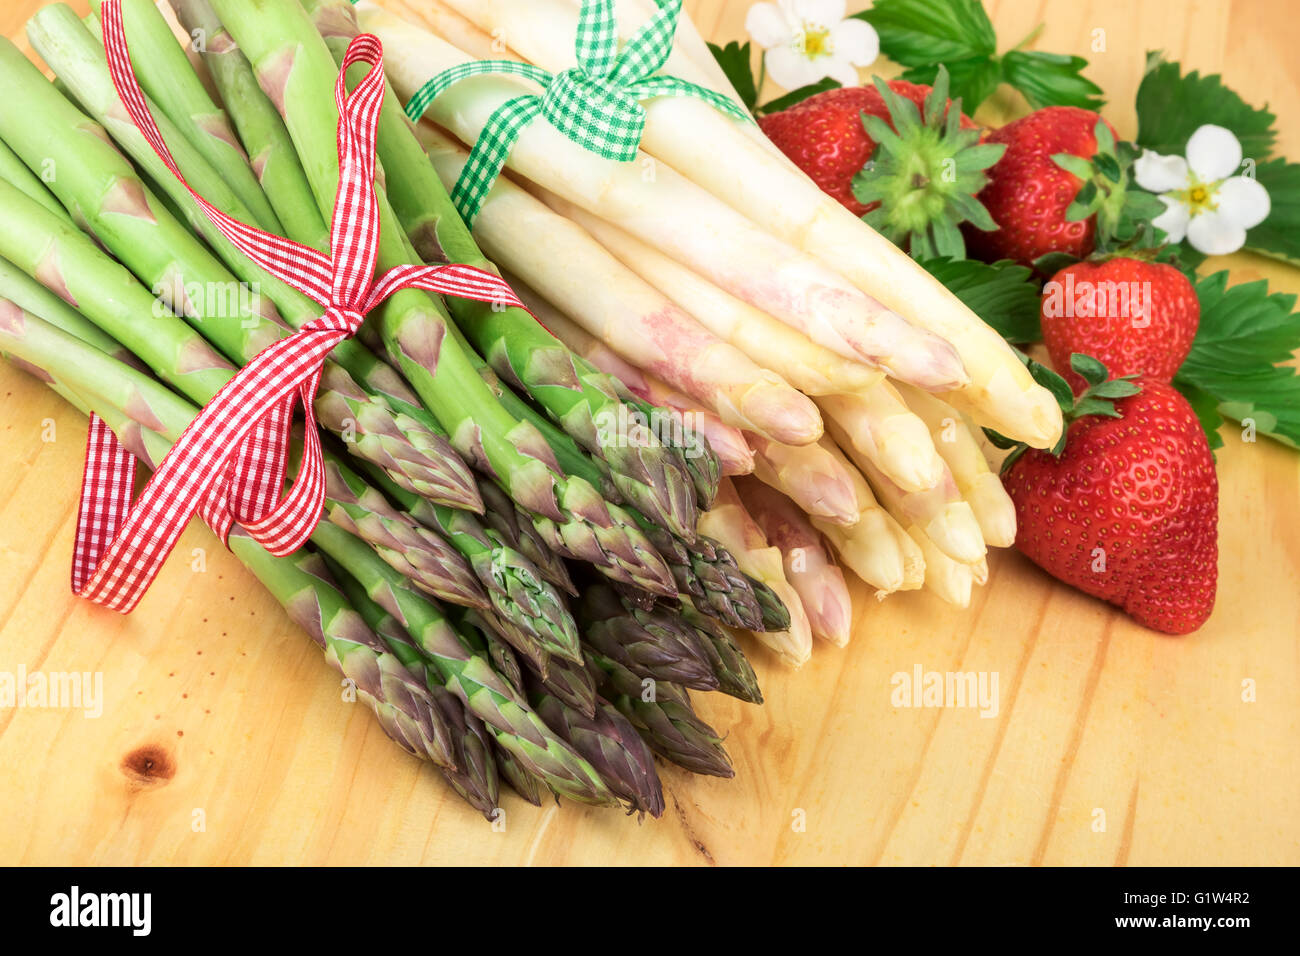 Vert blanc asperges aux fraises fraîches sur bois lumineux. Concept de cuisine saine. Banque D'Images